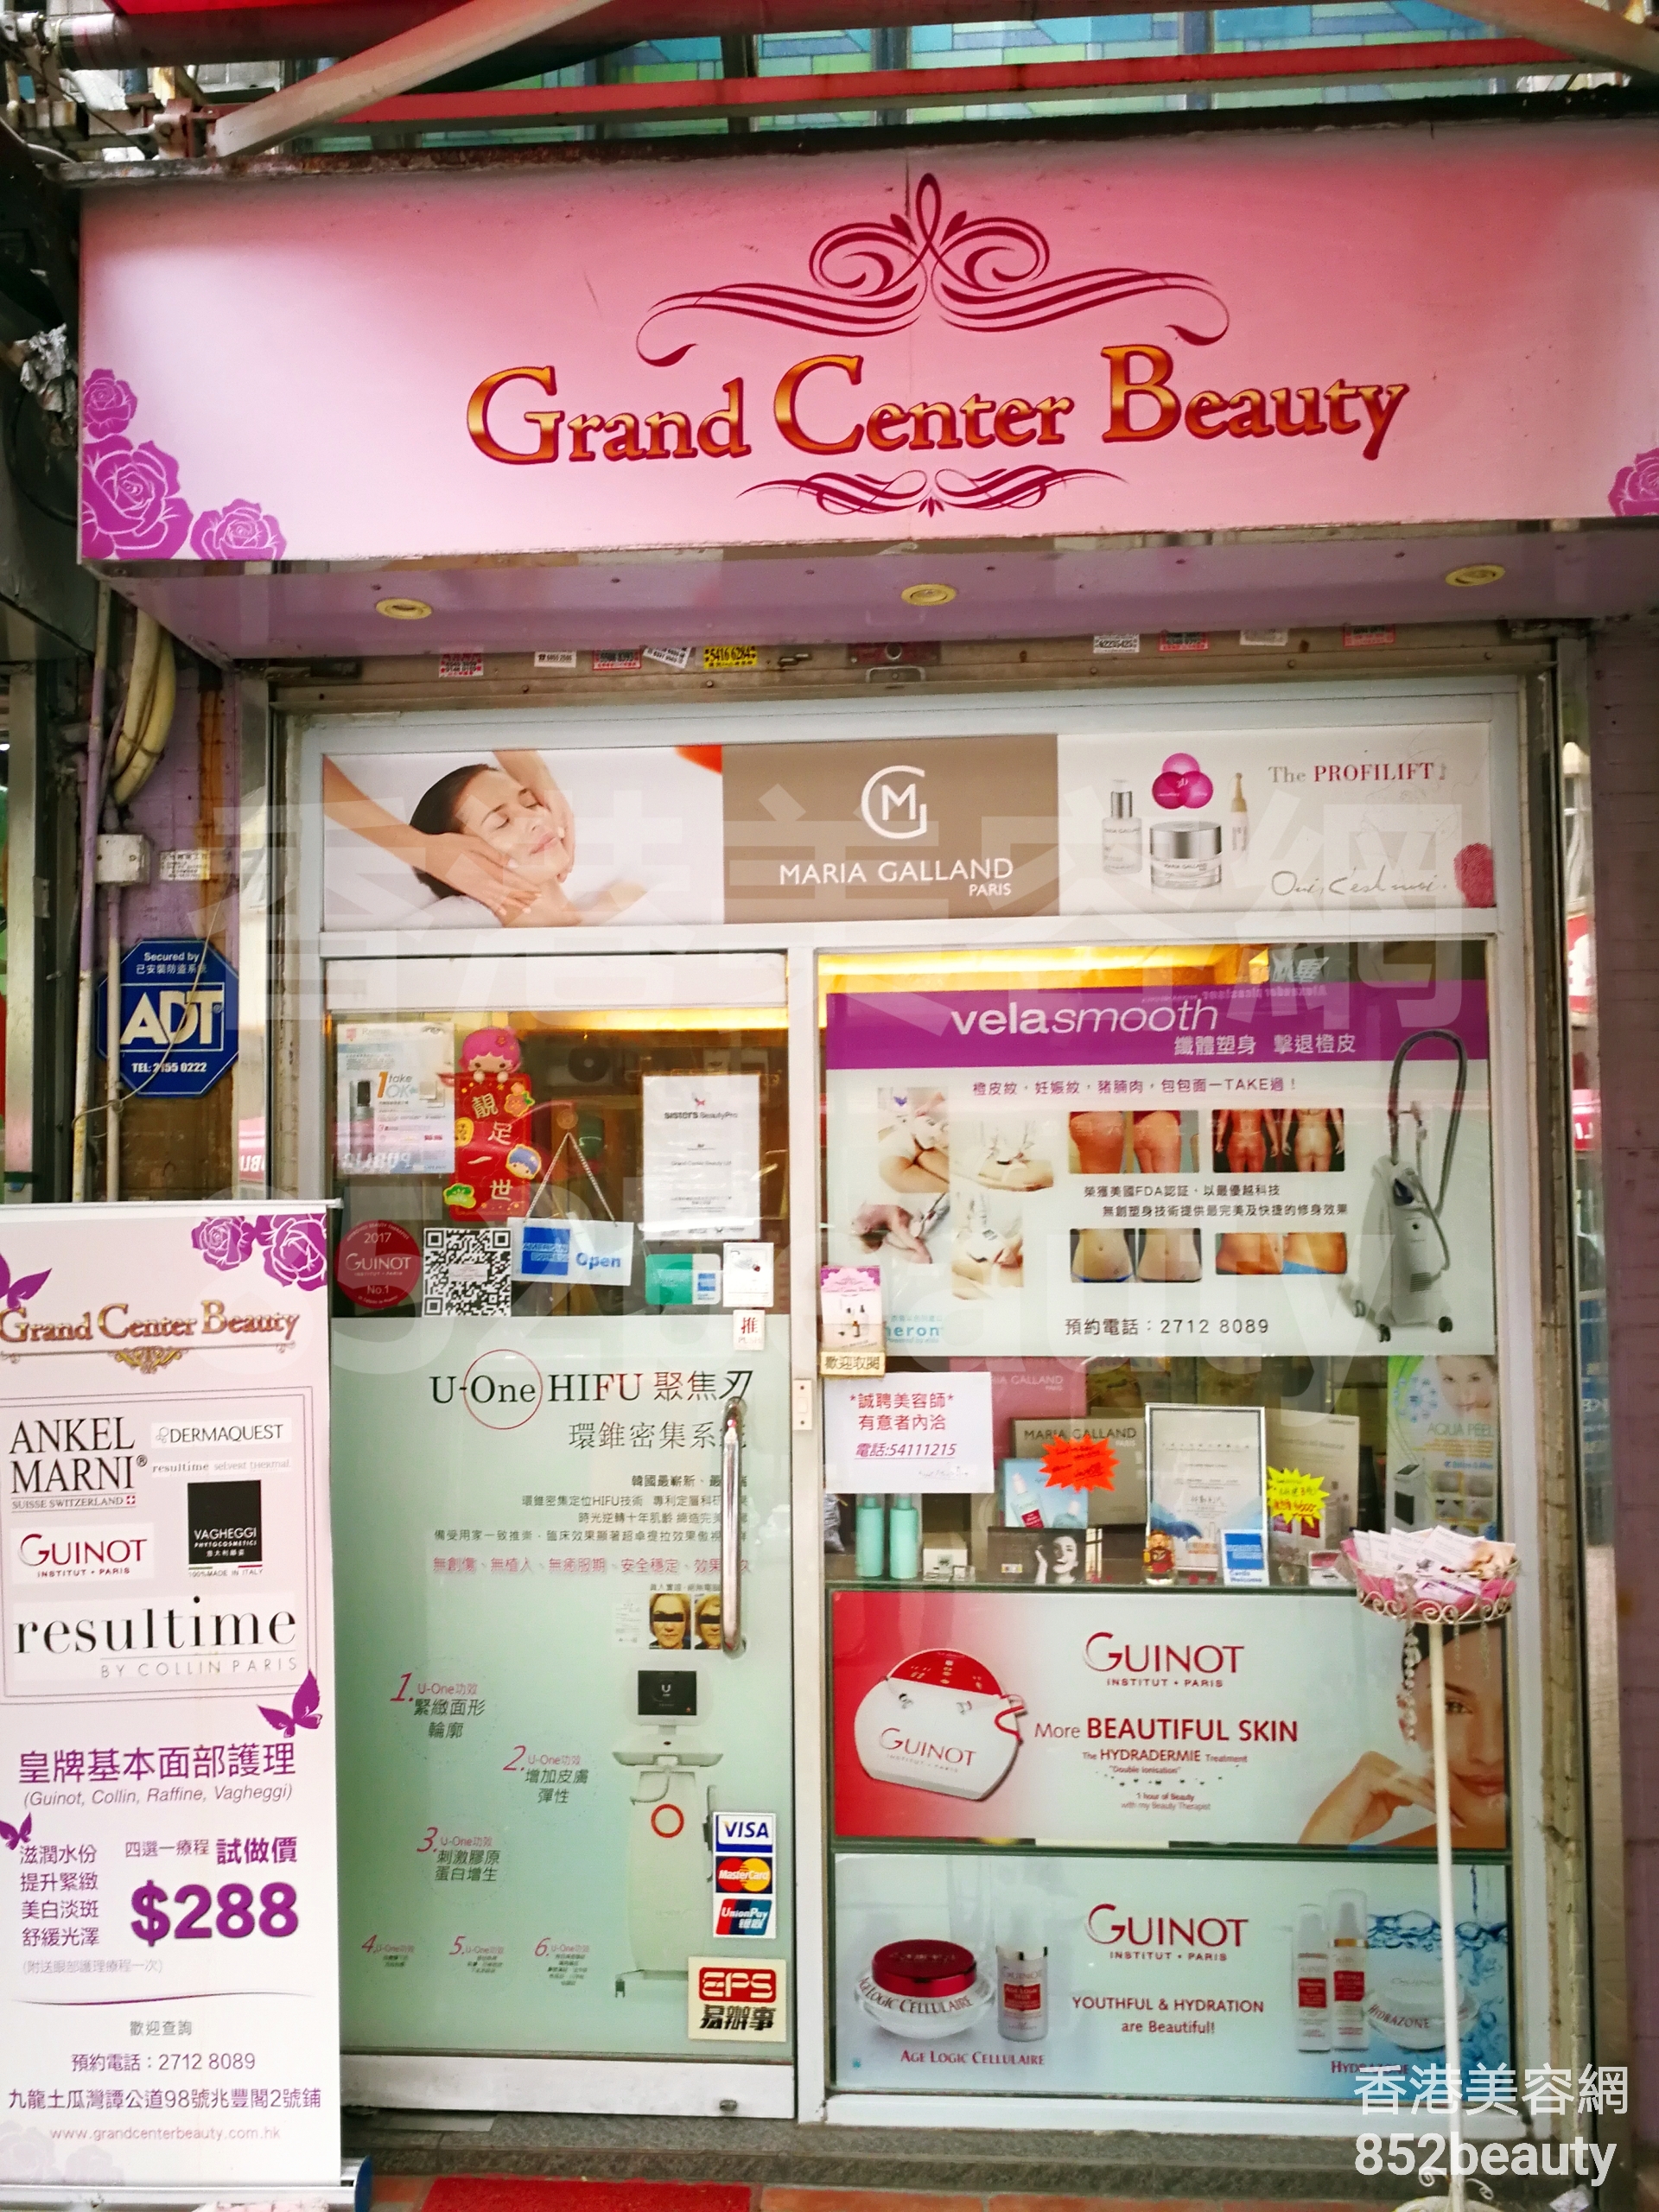 Facial Care: Grand Center Beauty